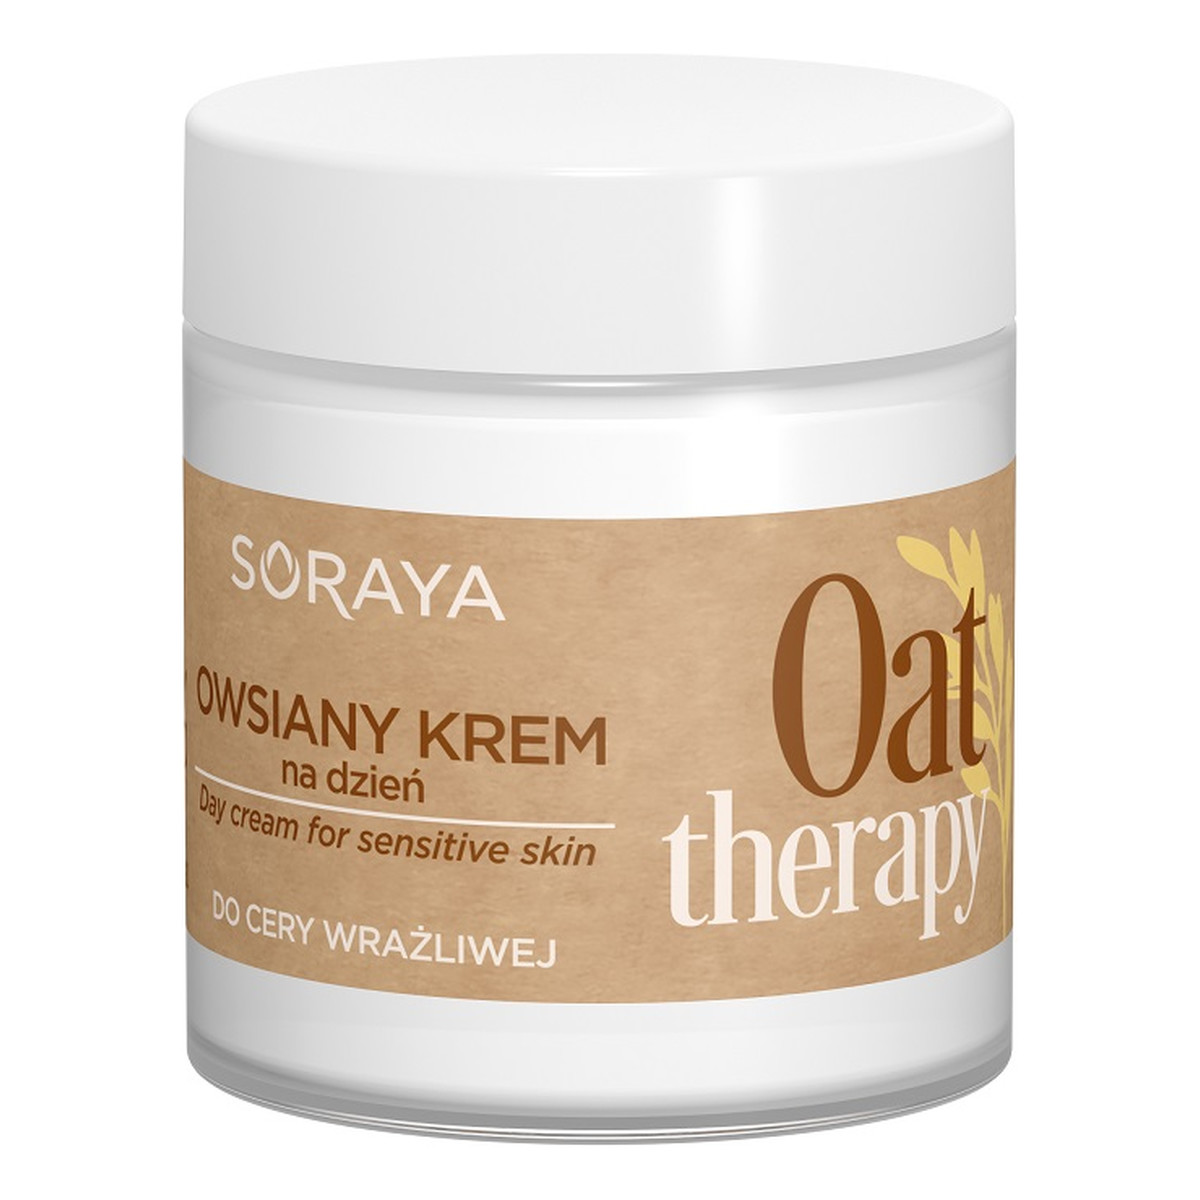 Soraya Oat Therapy owsiany Krem do twarzy na dzień do cery wrażliwej 75ml